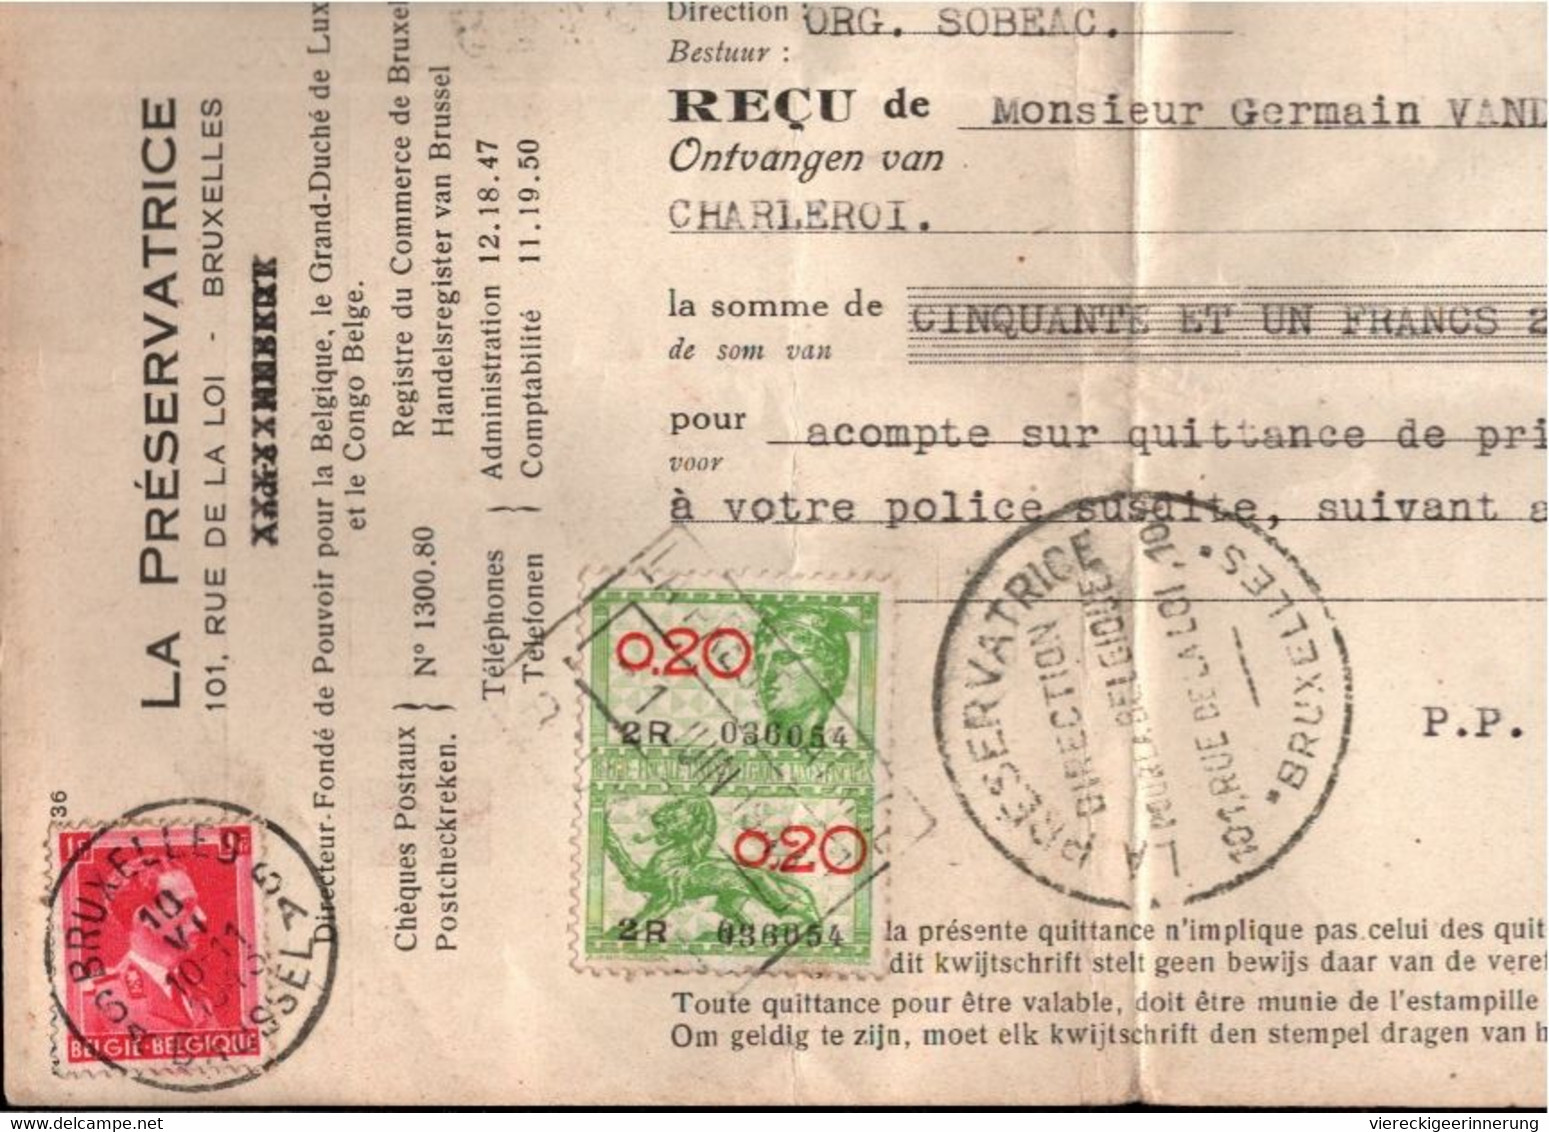 ! 50 pieces, Gros Lot de Fiscaux documents, Belgique, Belgien, Belgium, Steuermarken, Tax stamps